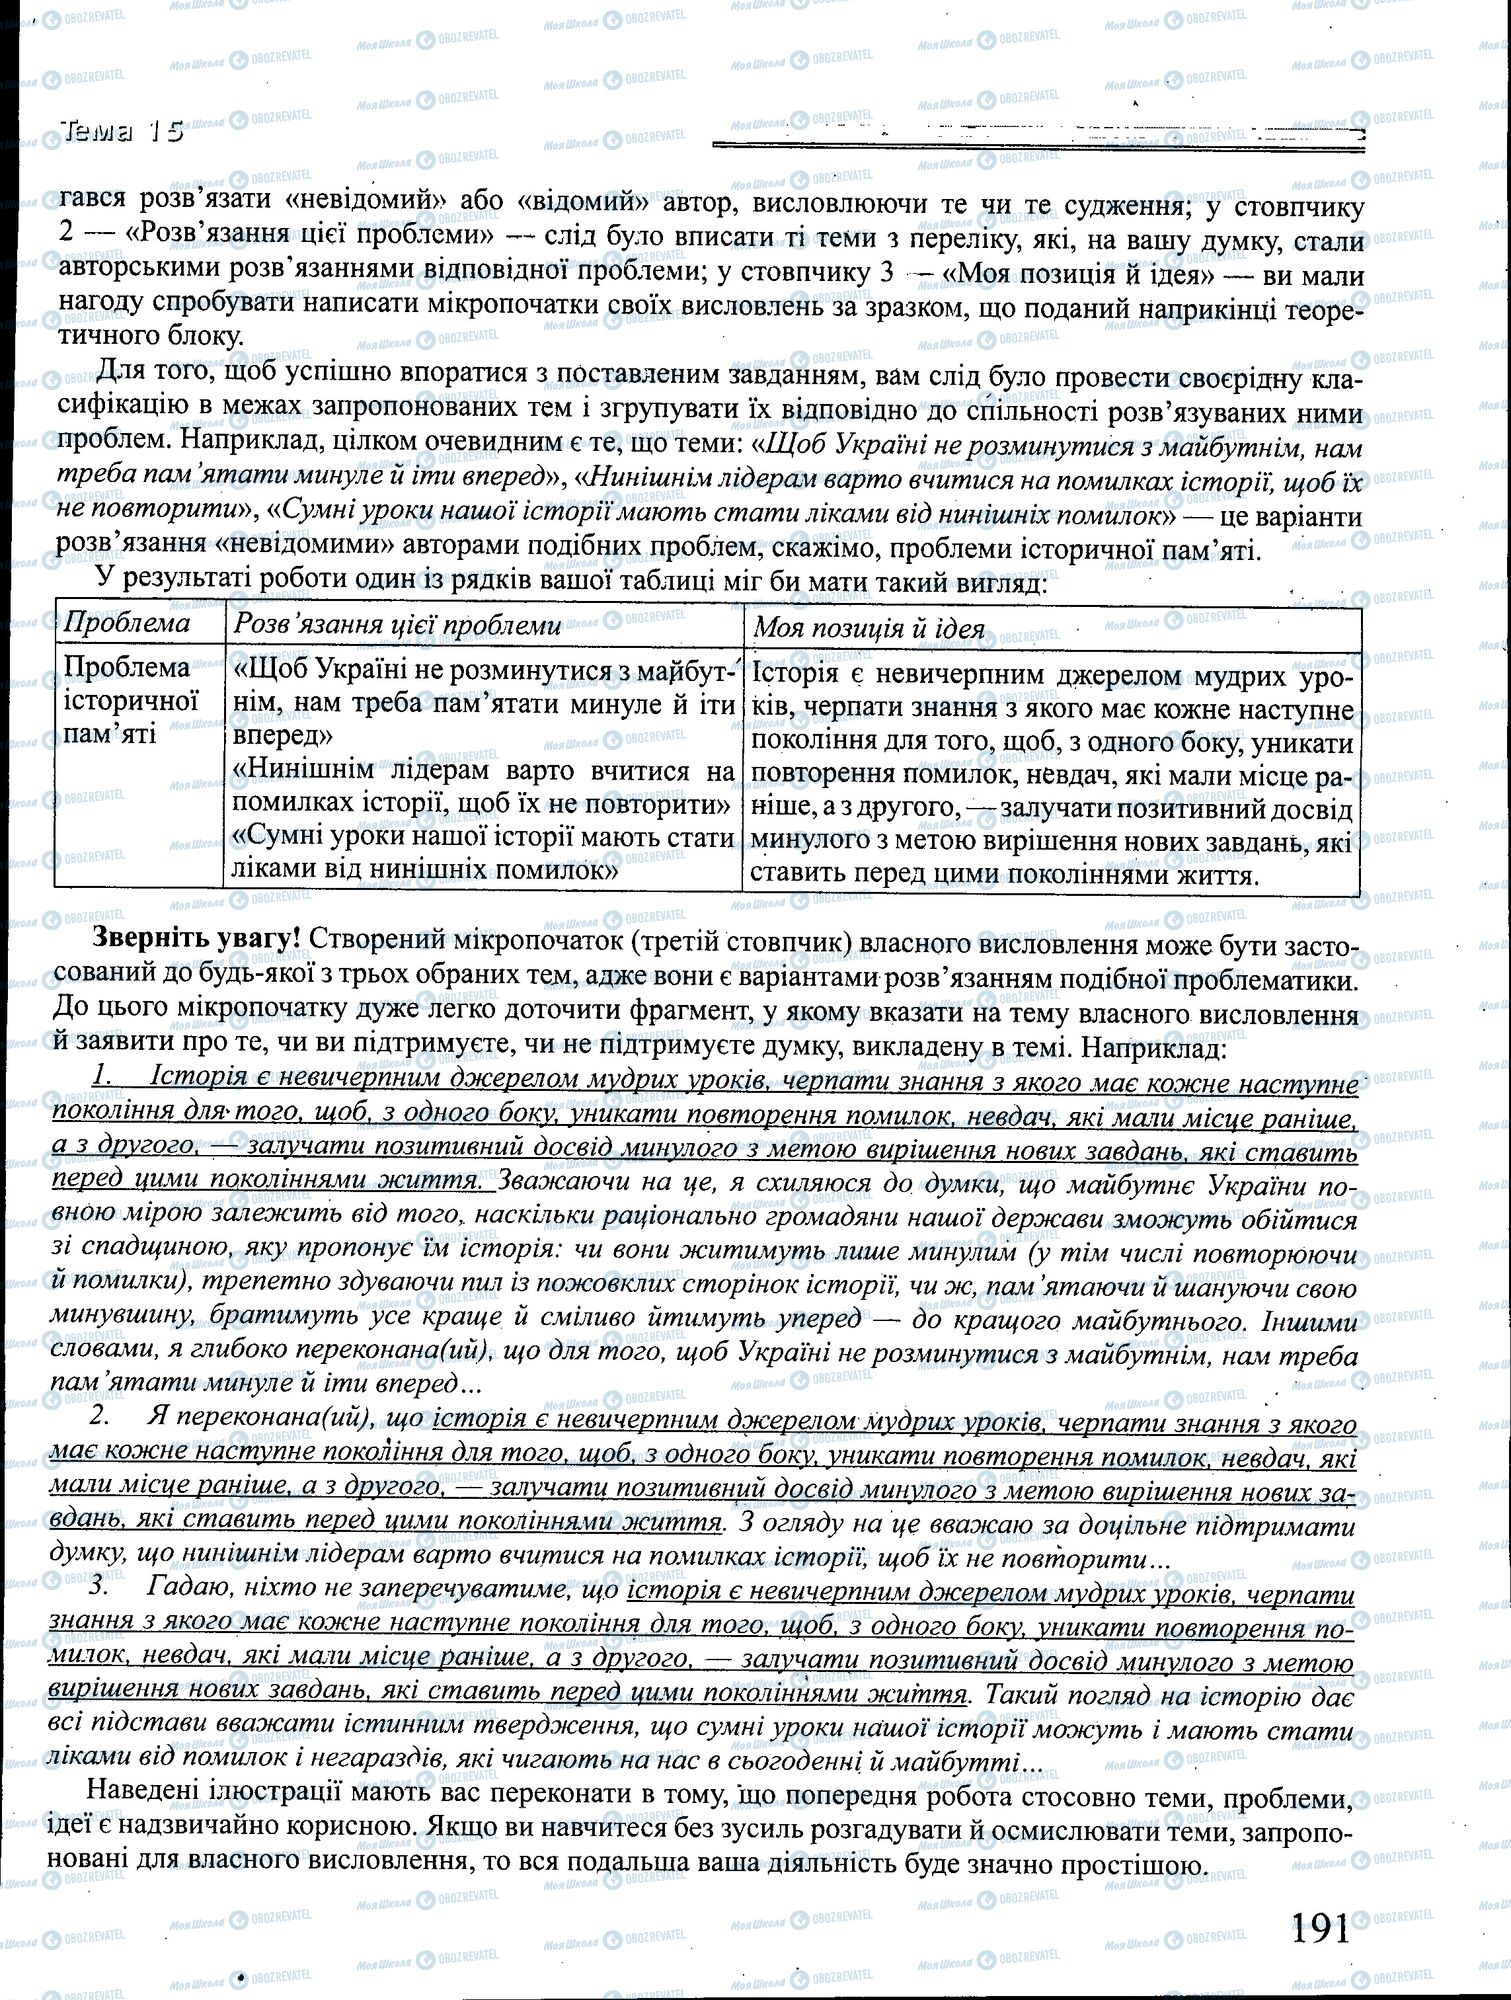 ДПА Укр мова 4 класс страница 191